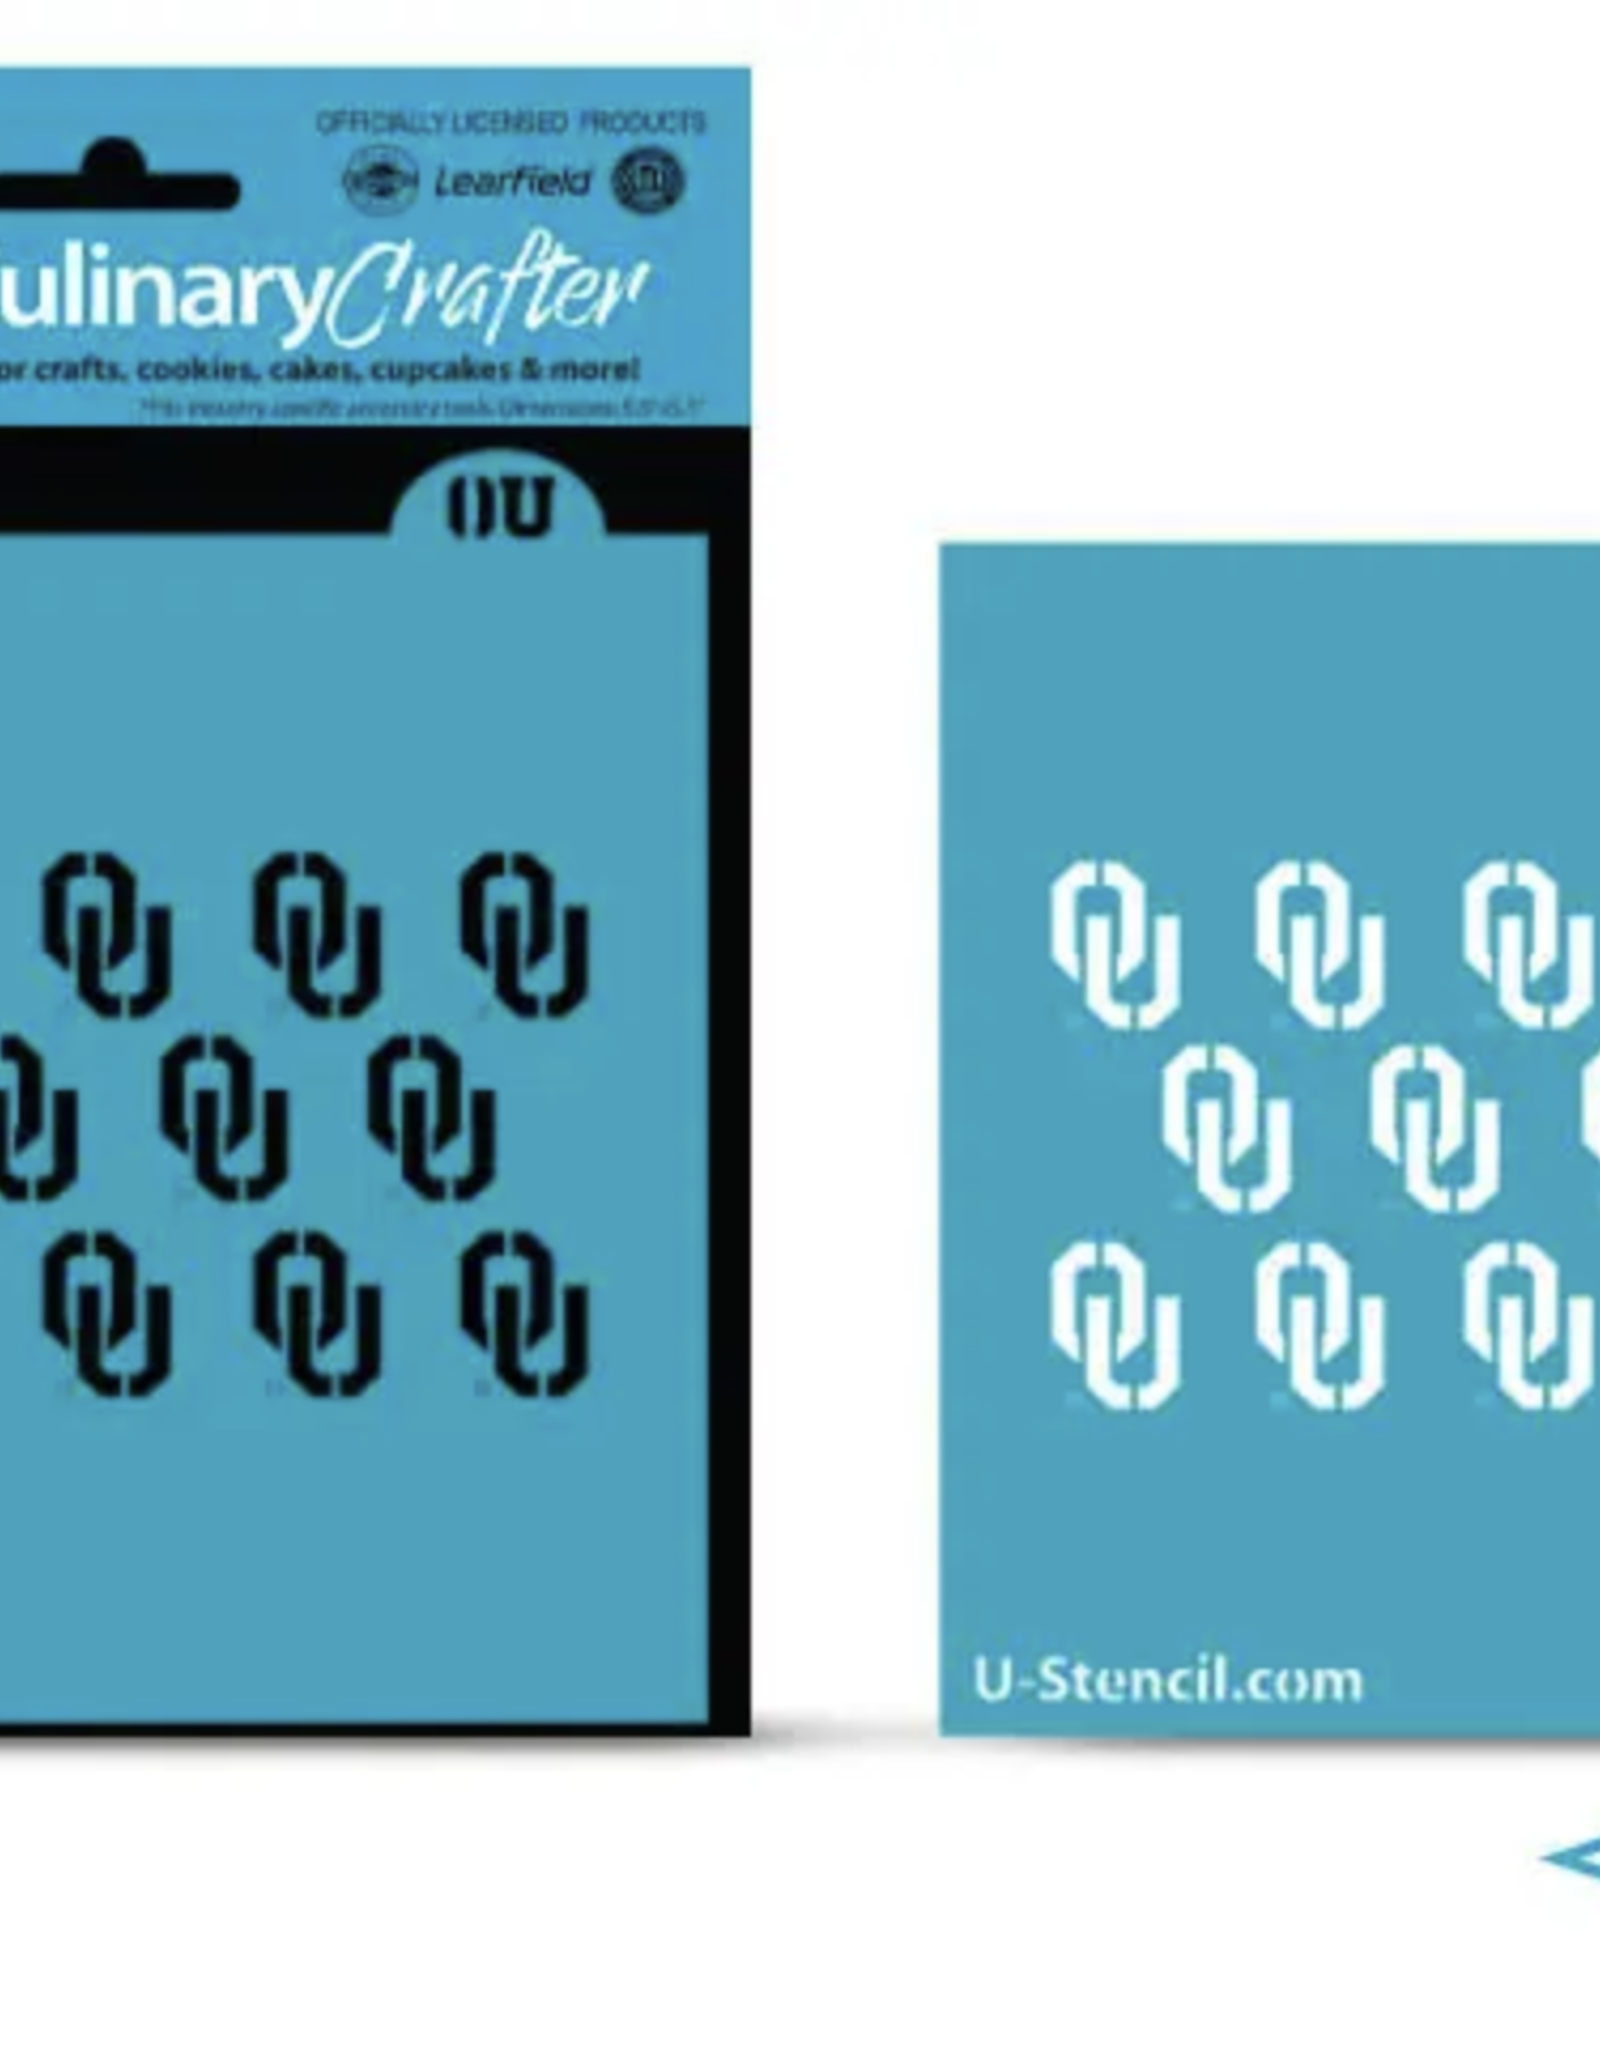 U-Stencil OU Step & Repeat Culinary/Crafter Stencil